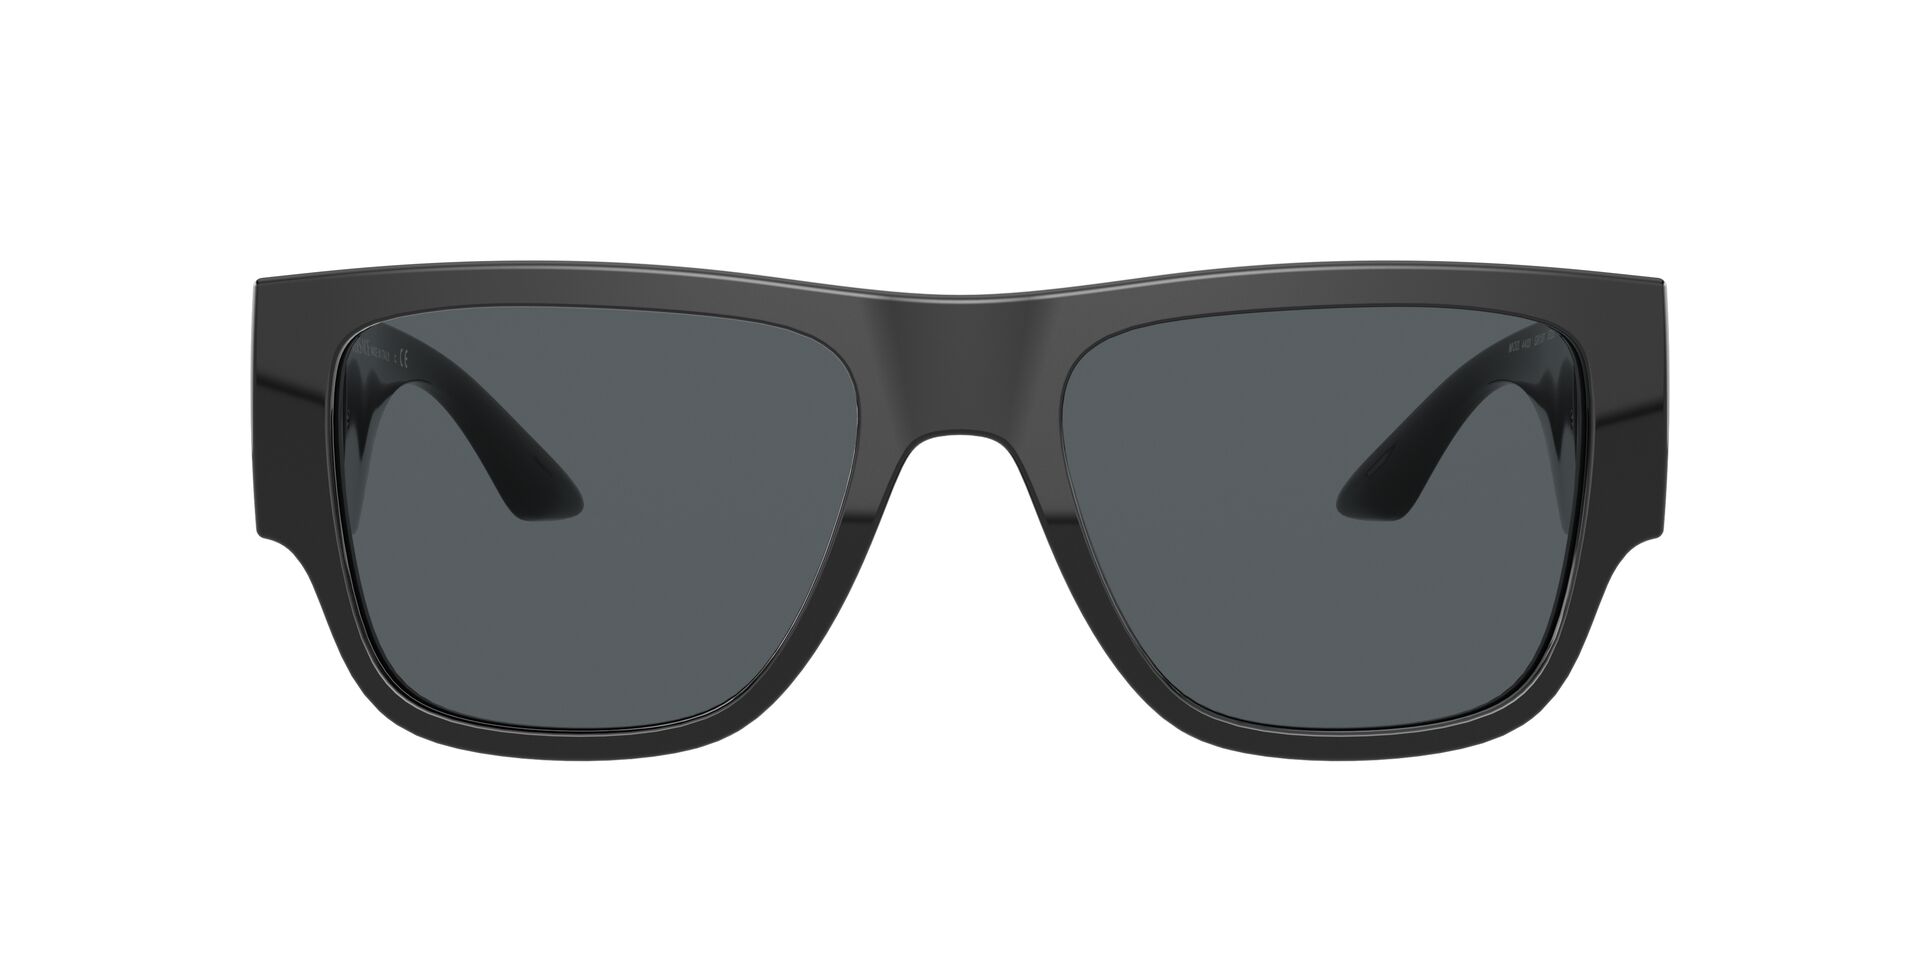 Lentes de Sol Versace VE4403 Negro – Solaris, gafas de sol